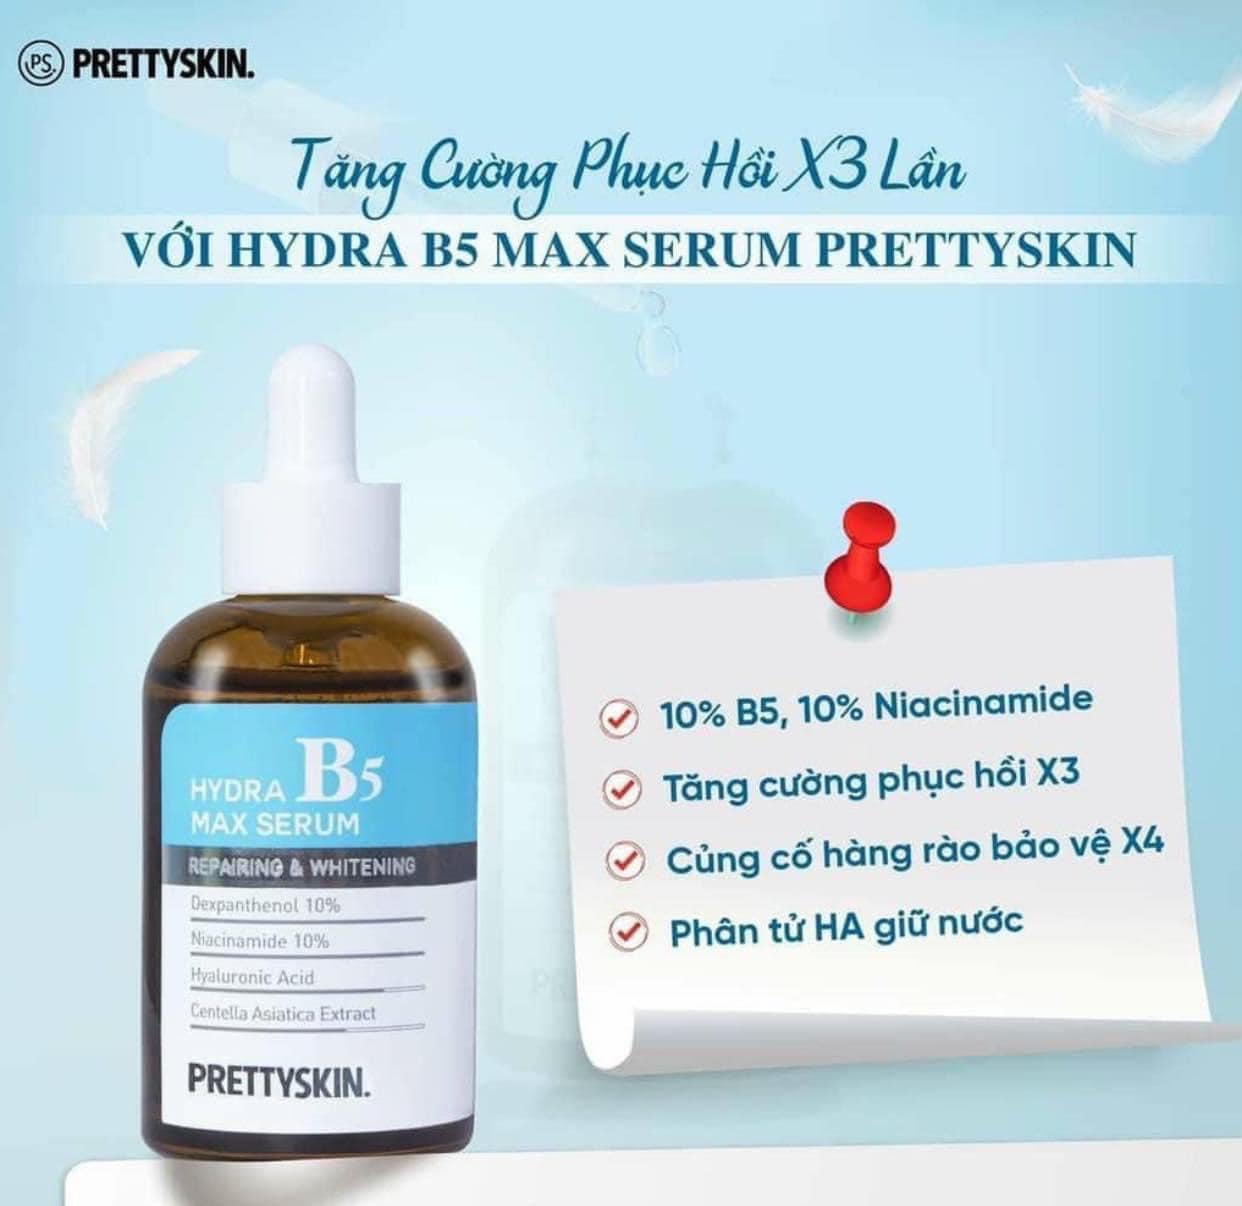 Serum B5 Pretty Skin Hydra Max Tinh Chất Phục Hồi Và Dưỡng Trắng Da 50ml